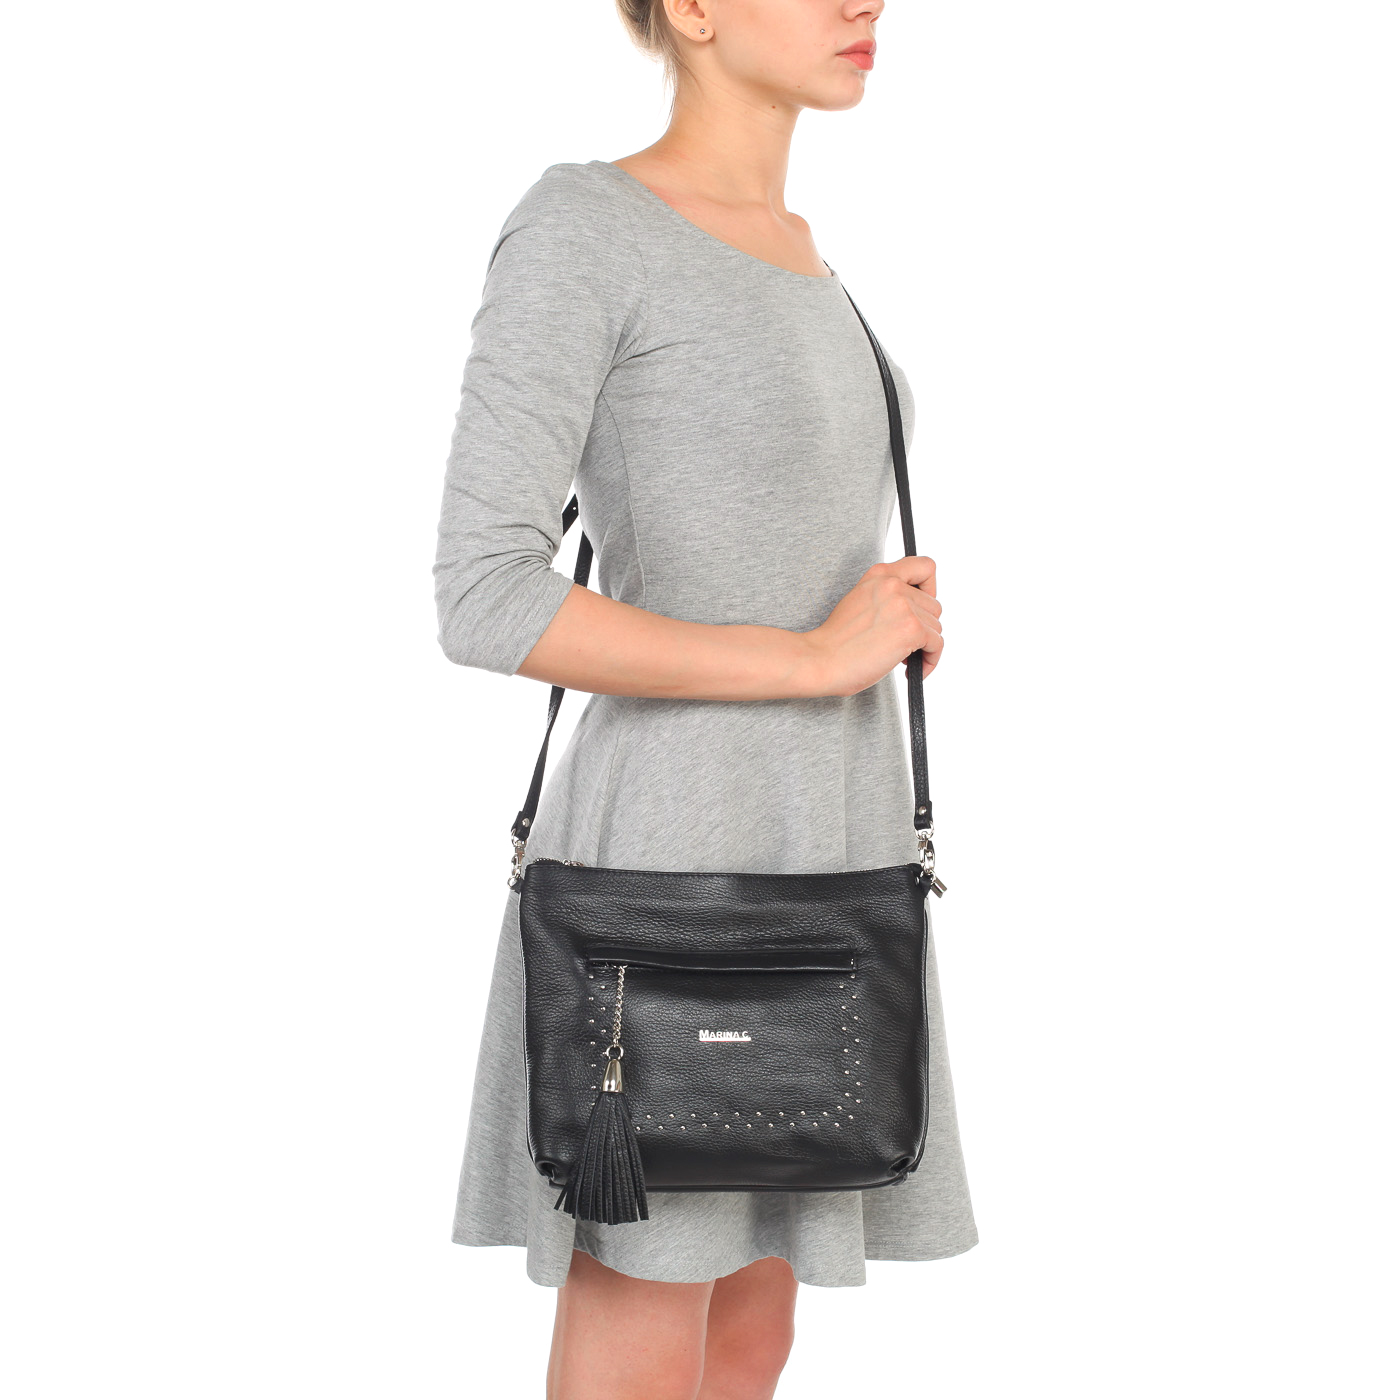 Женская кожаная сумка со съемным регулируемым плечевым ремешком Marina Creazioni 